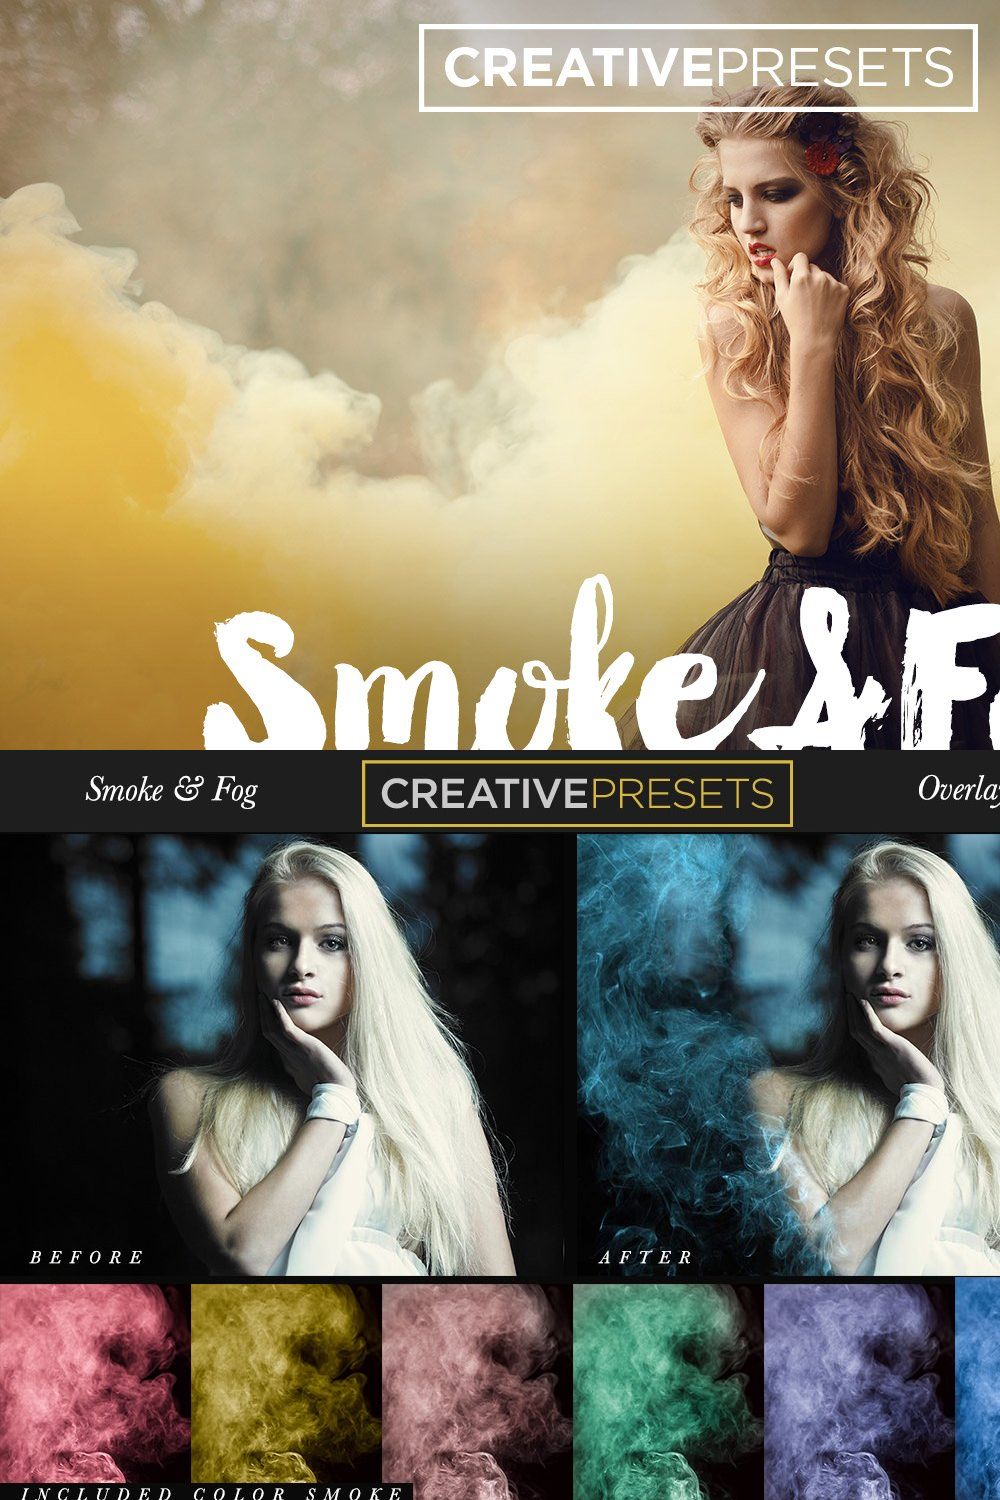 150 Smoke+Fog+Color Smoke Overlays pinterest preview image.